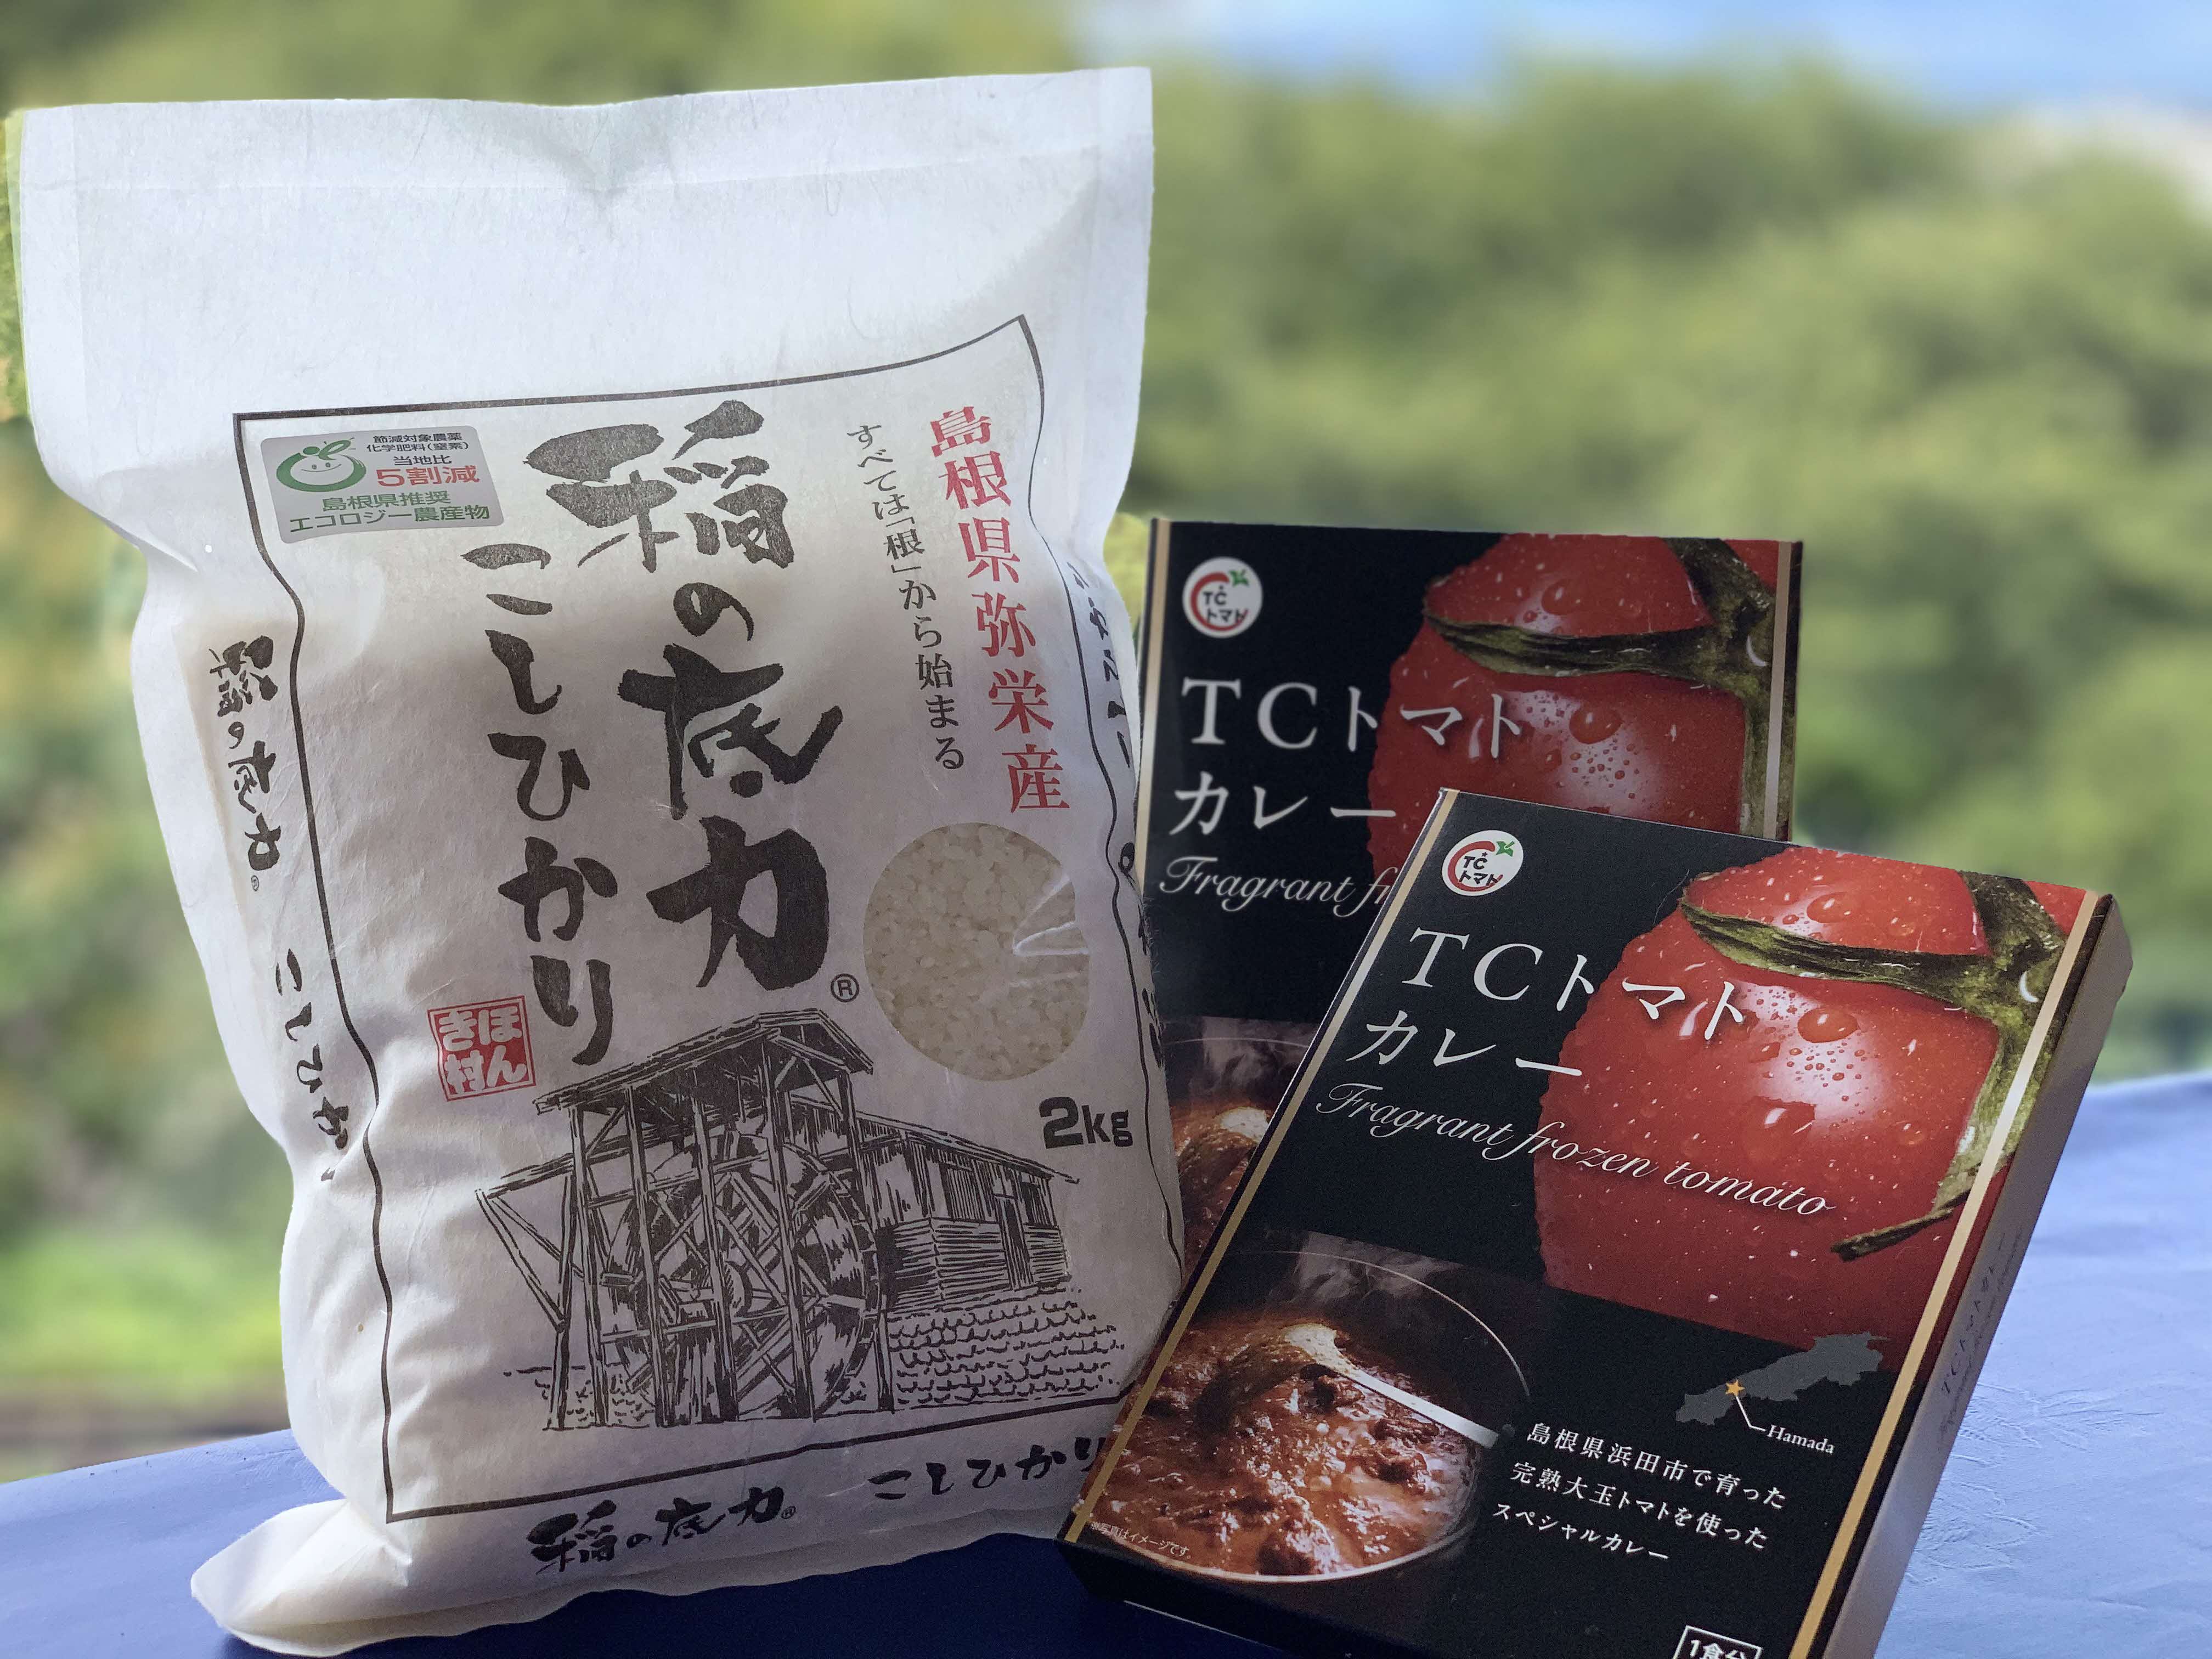 浜田・弥栄産「稲の底力こしひかり」と「TCトマトカレー」のセット 米